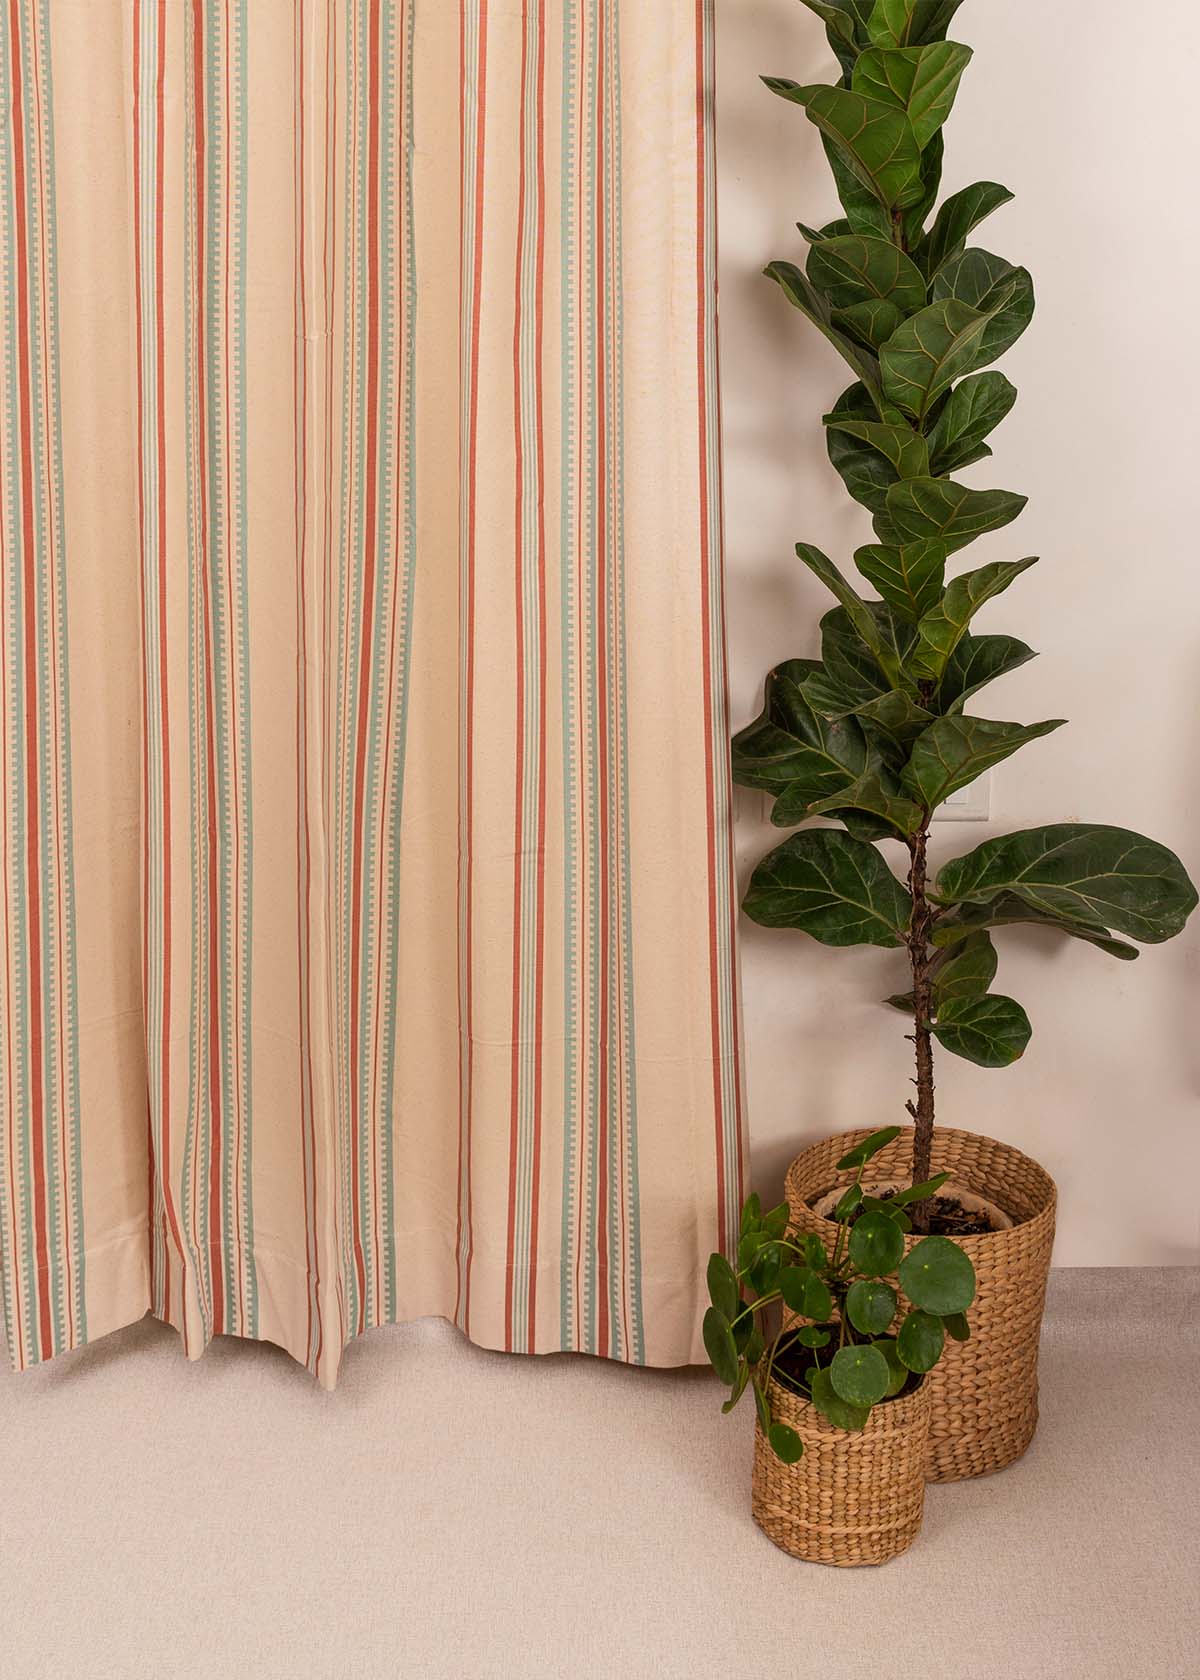 Roman Stripes Printed Cotton Curtain - Multicolor